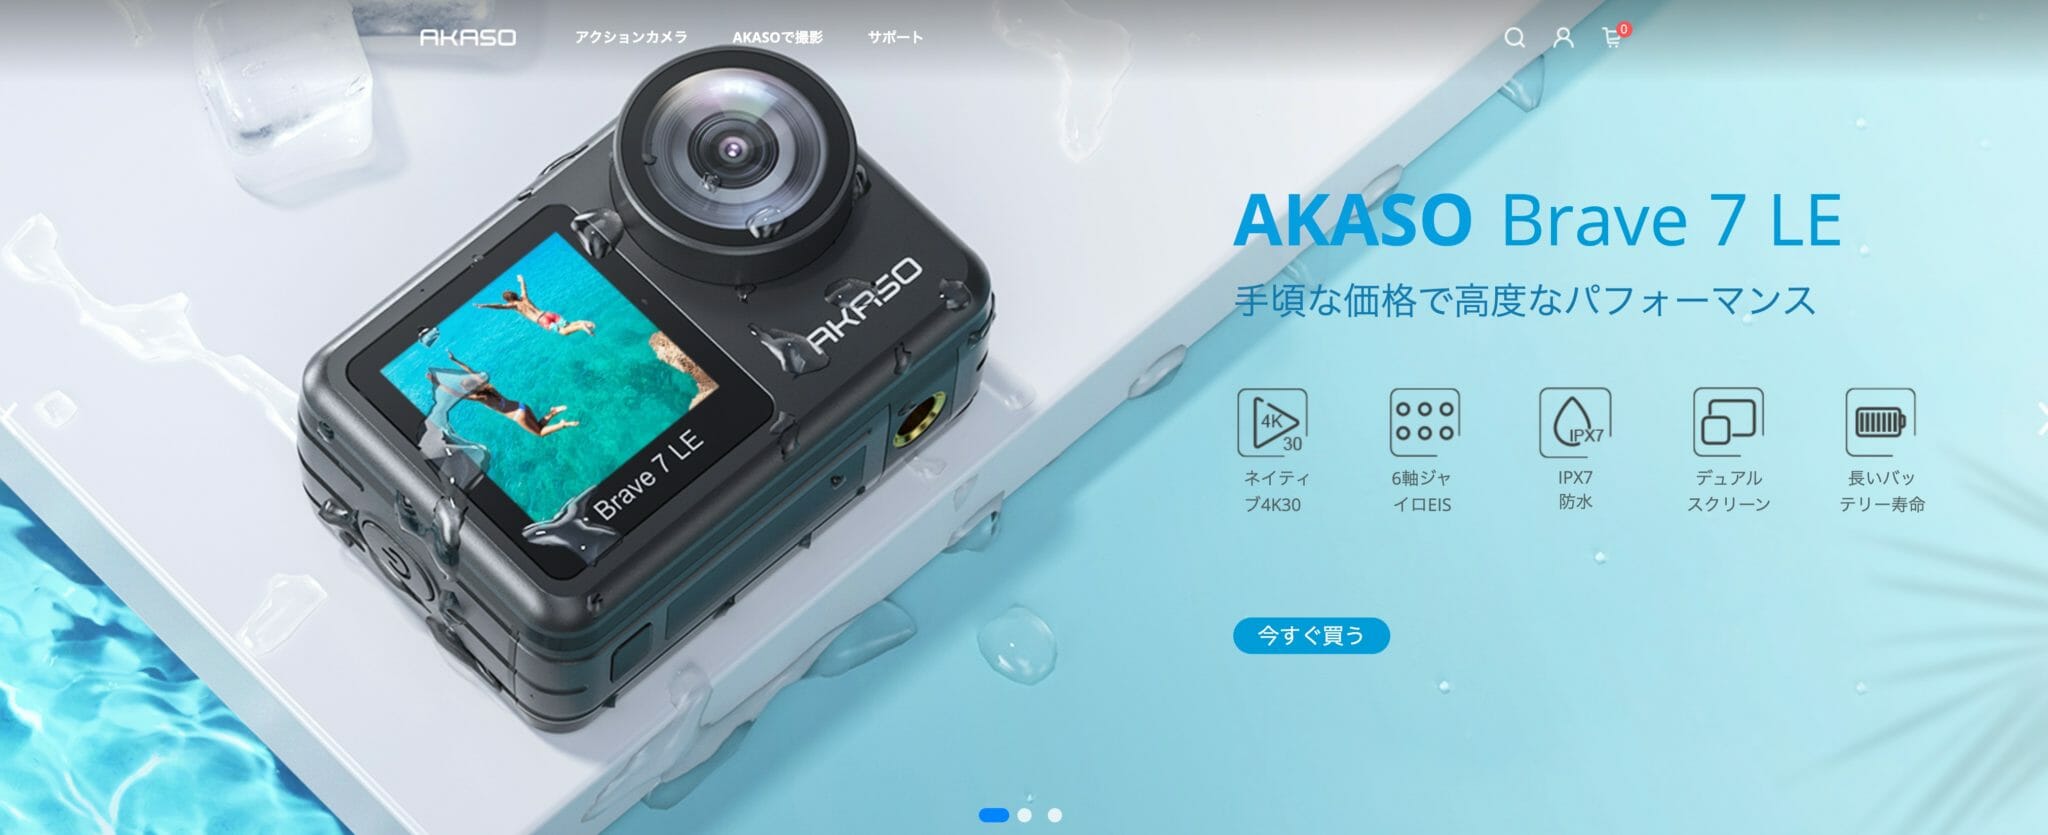 【特注加工】AKASO BRAVE7 未開封です アクションカメラ・ウェアラブルカメラ